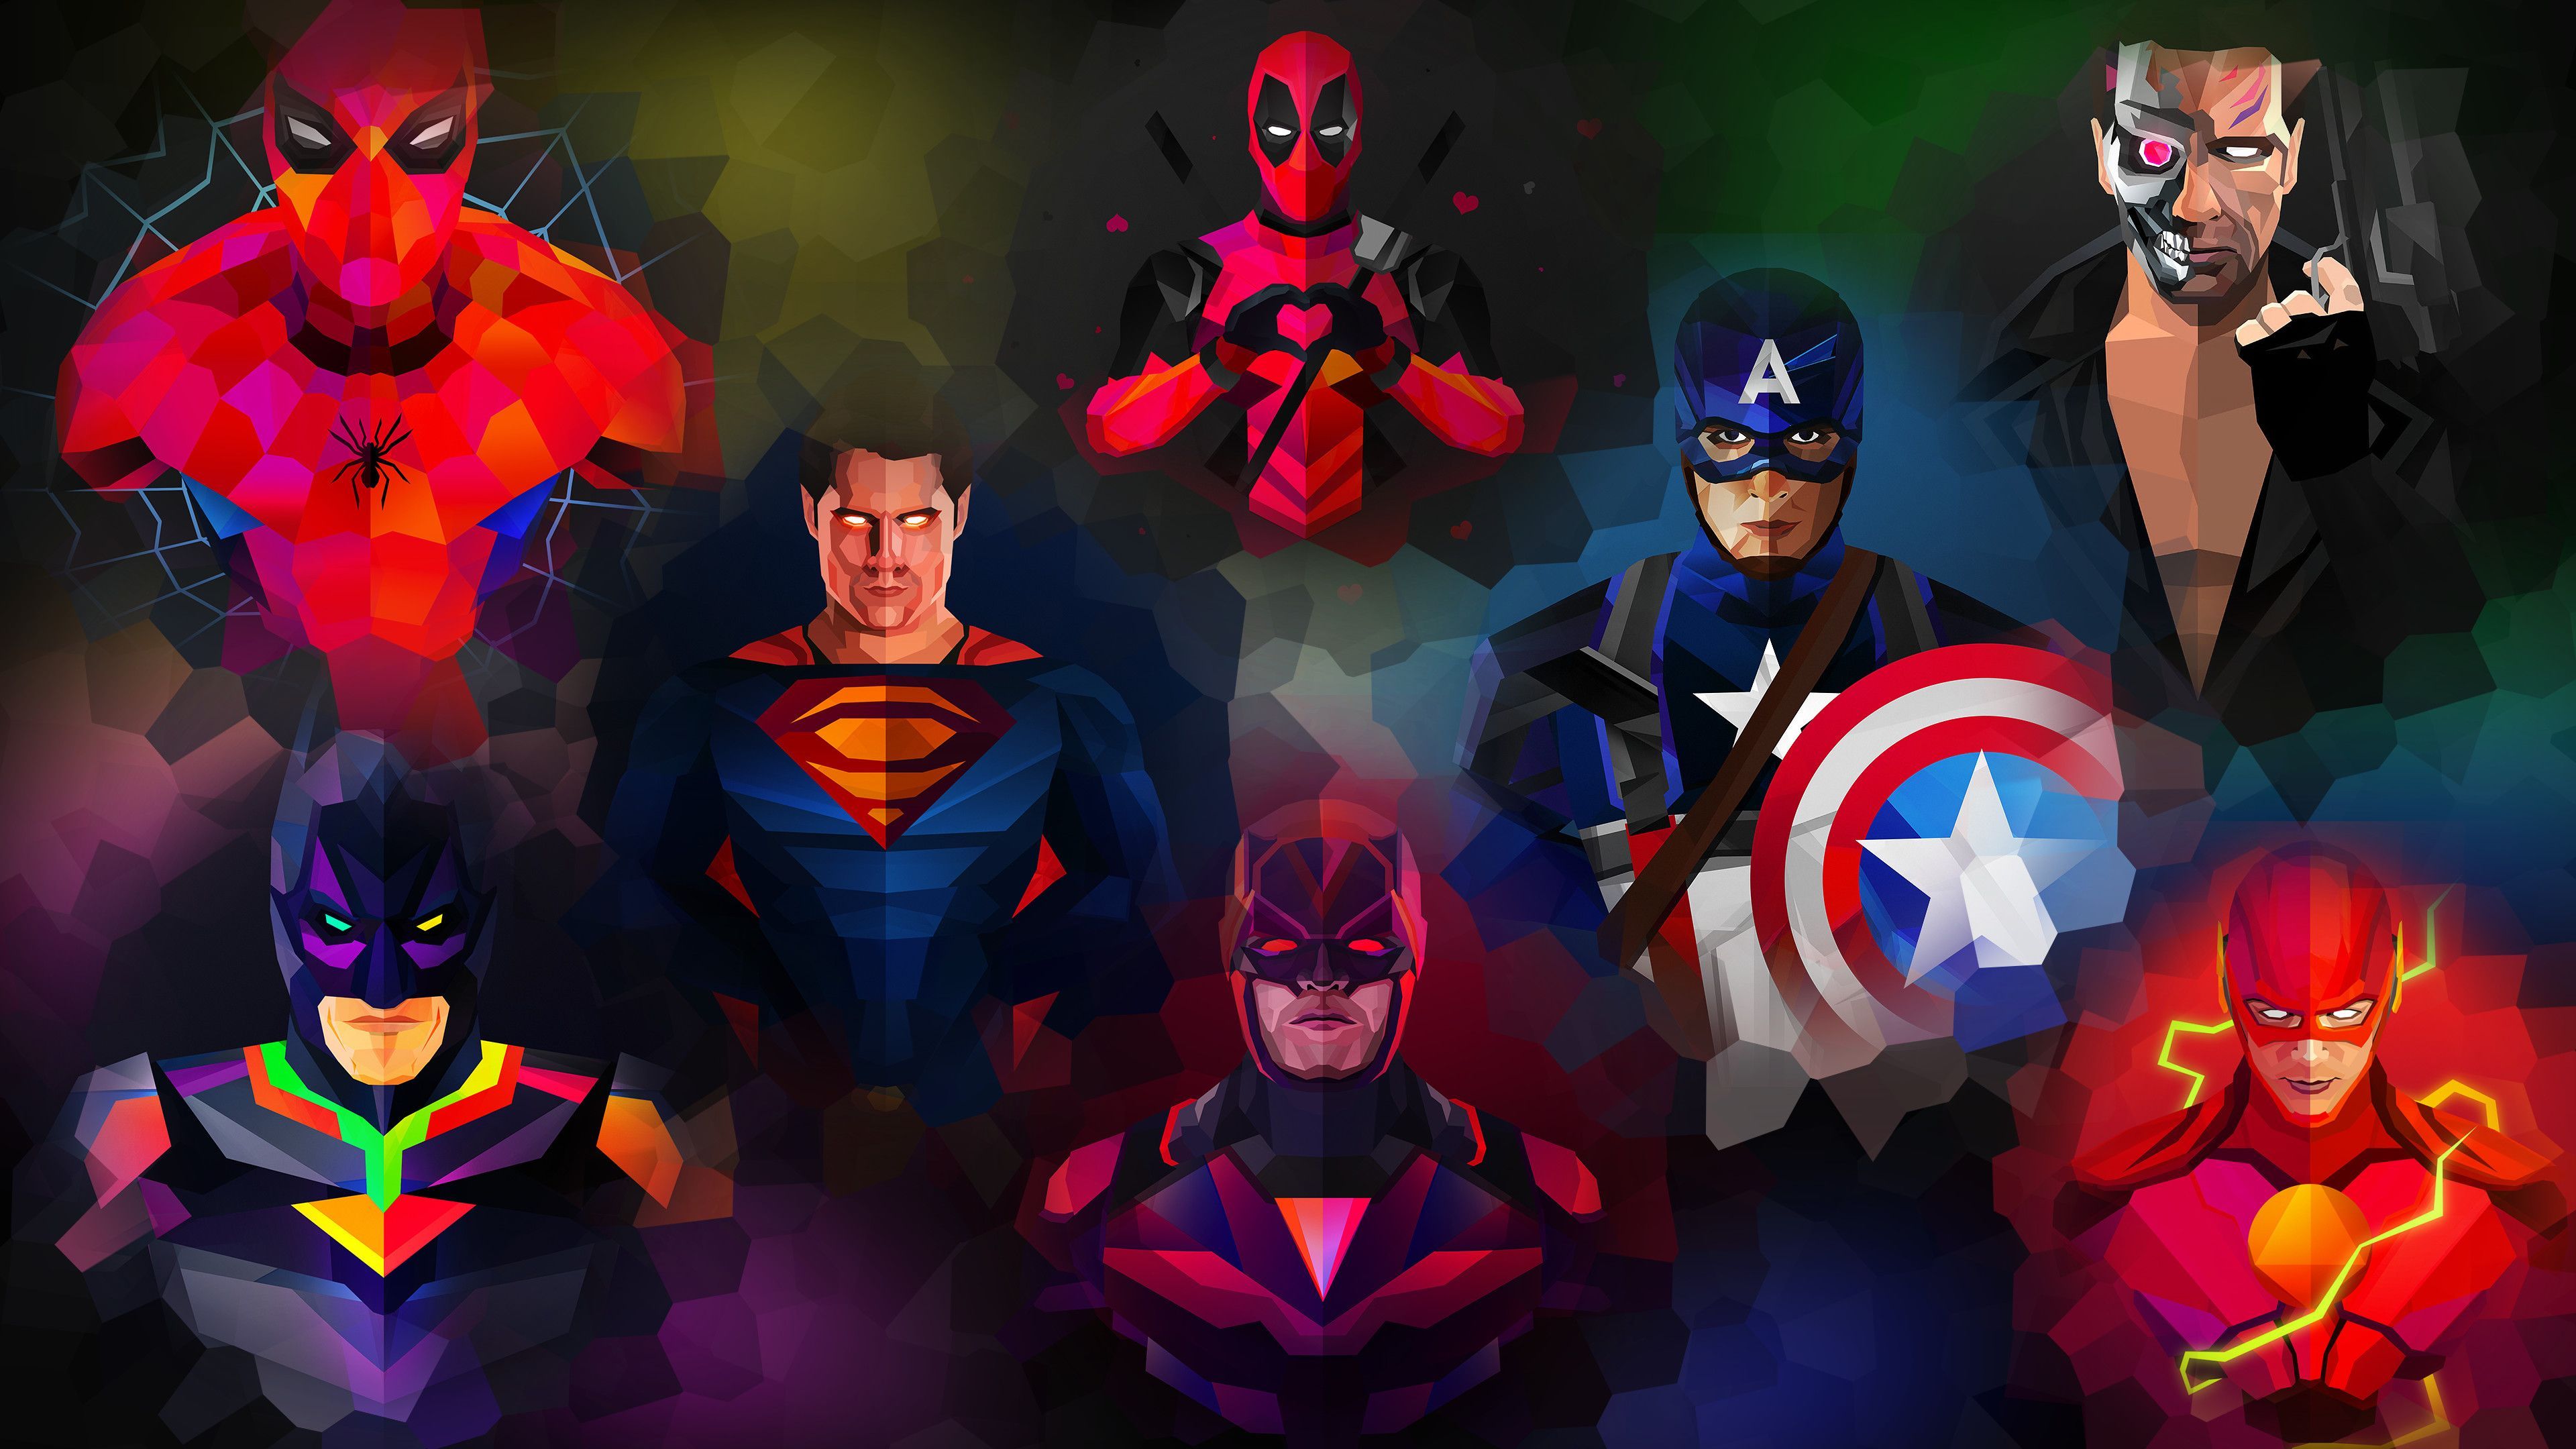 superhero 4k wallpaper. Superhero wallpaper, Marvel comics wallpaper, Marvel wallpaper